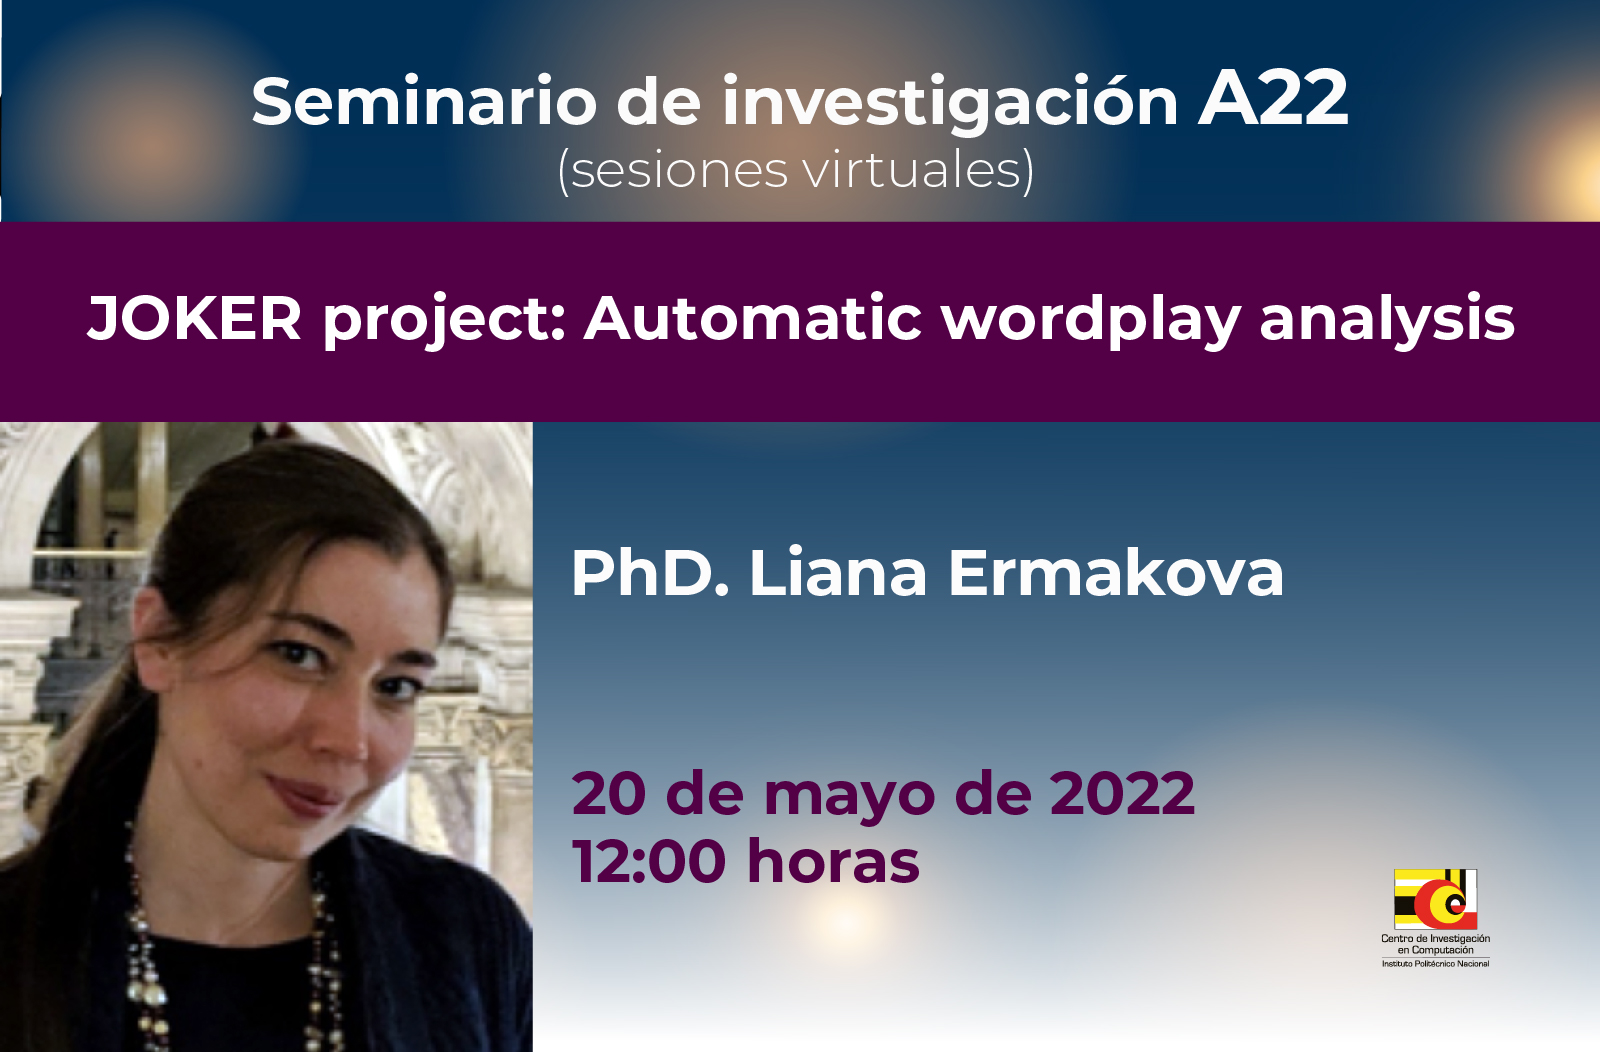 05/20/22 Seminario de Investigación A22- JOKER project: Automatic wordplay analysis.